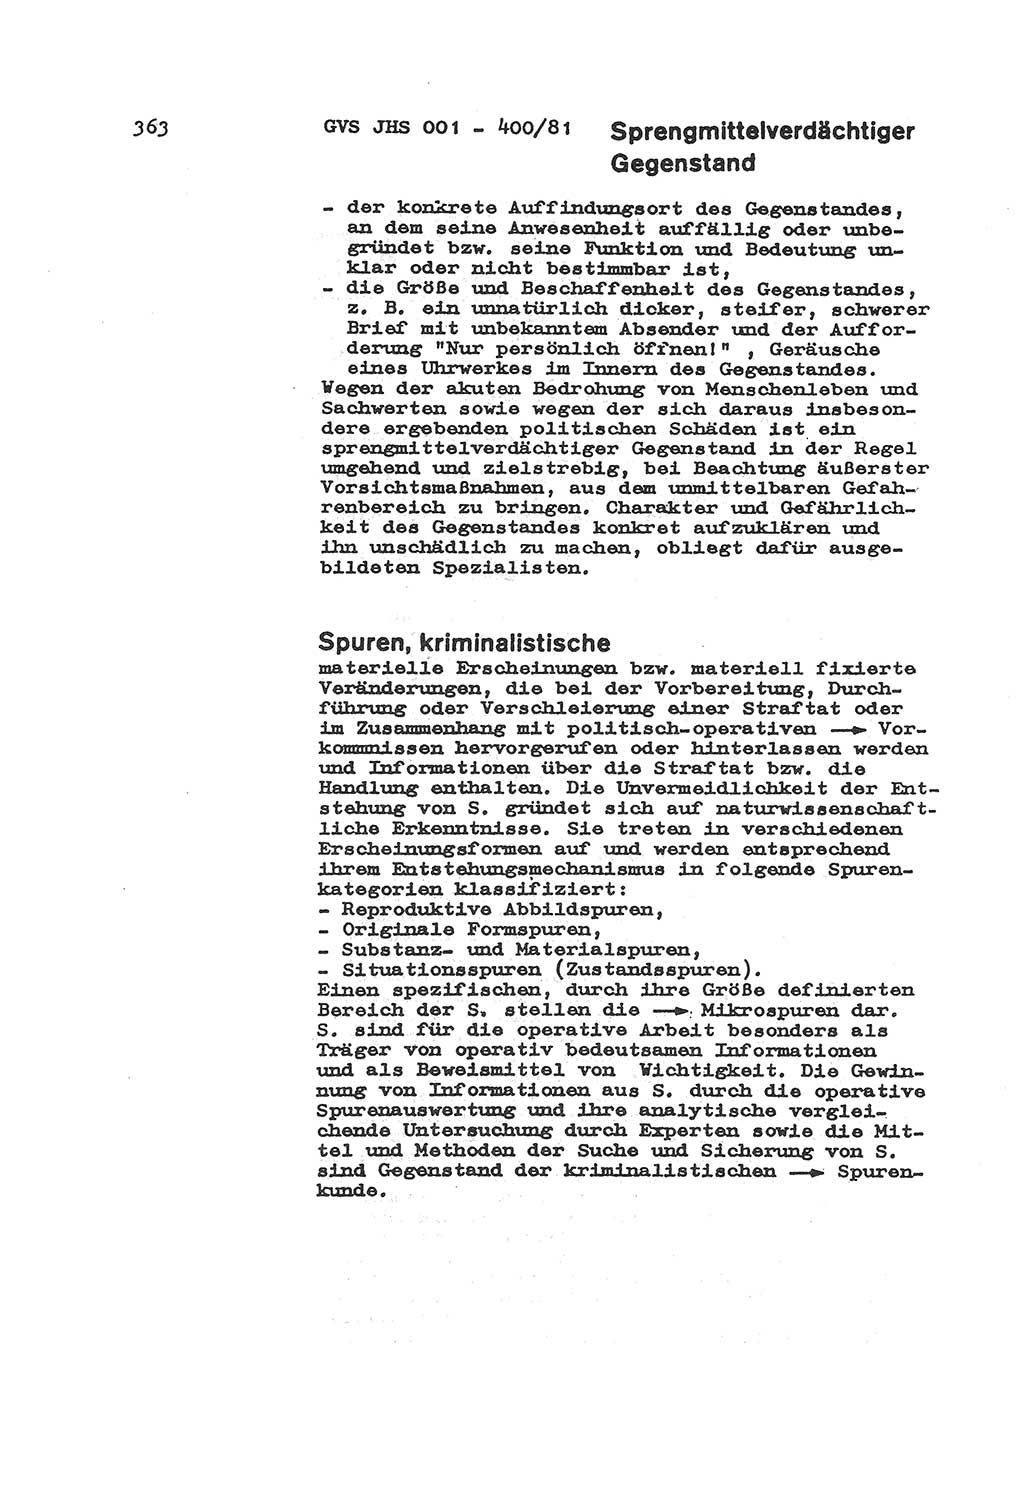 Wörterbuch der politisch-operativen Arbeit, Ministerium für Staatssicherheit (MfS) [Deutsche Demokratische Republik (DDR)], Juristische Hochschule (JHS), Geheime Verschlußsache (GVS) o001-400/81, Potsdam 1985, Blatt 363 (Wb. pol.-op. Arb. MfS DDR JHS GVS o001-400/81 1985, Bl. 363)